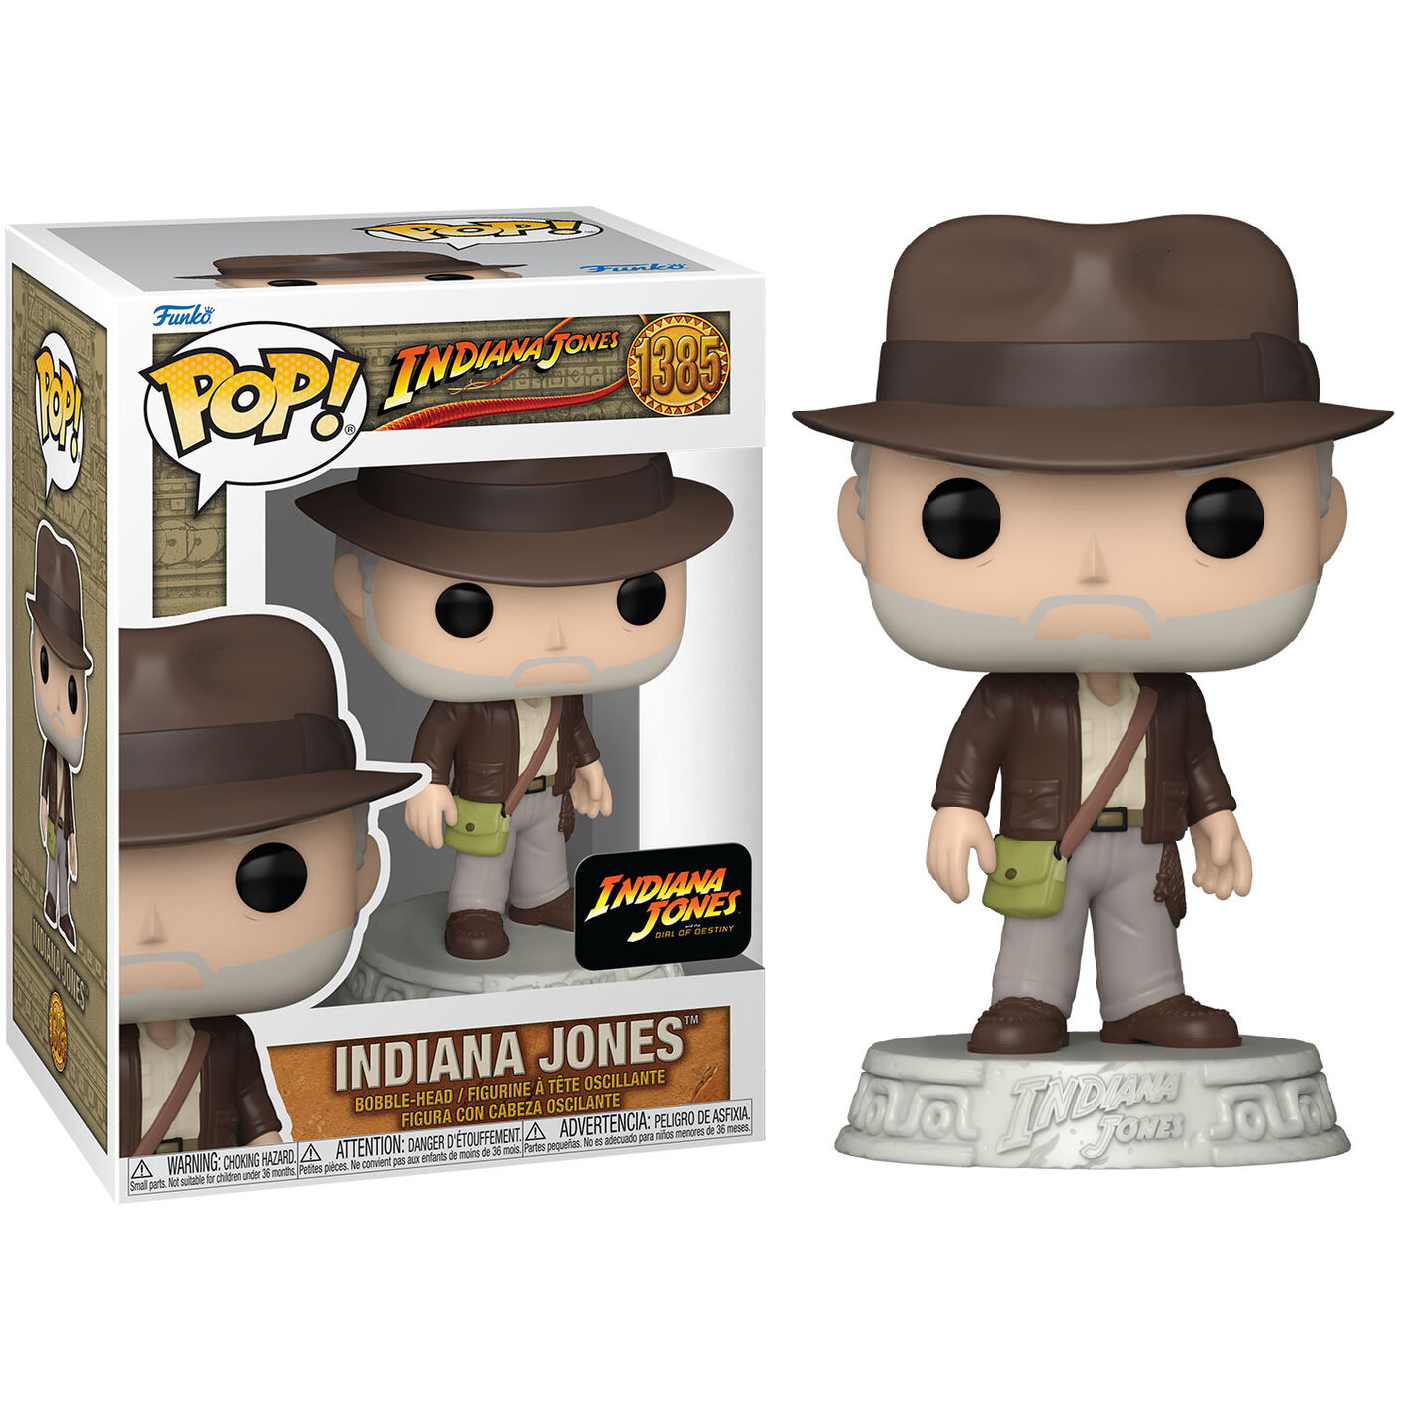 Toys N Tuck:Pop Vinyl - Indiana Jones - Indiana Jones 1385,Indiana Jones